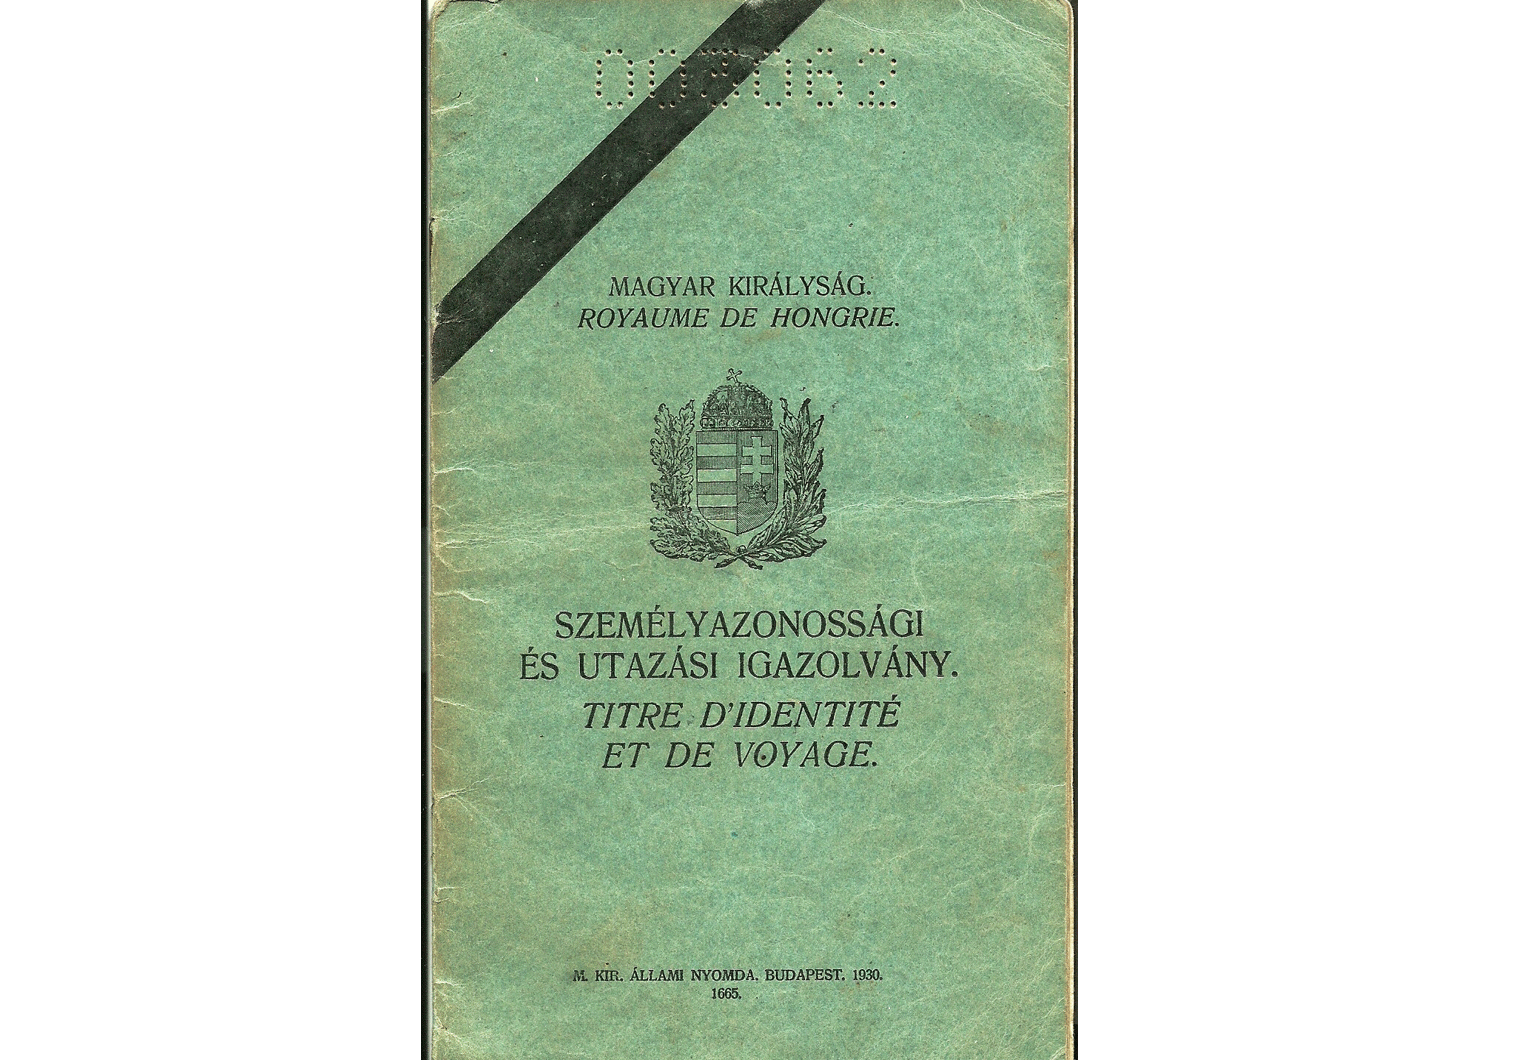 1944 Hungarian passport